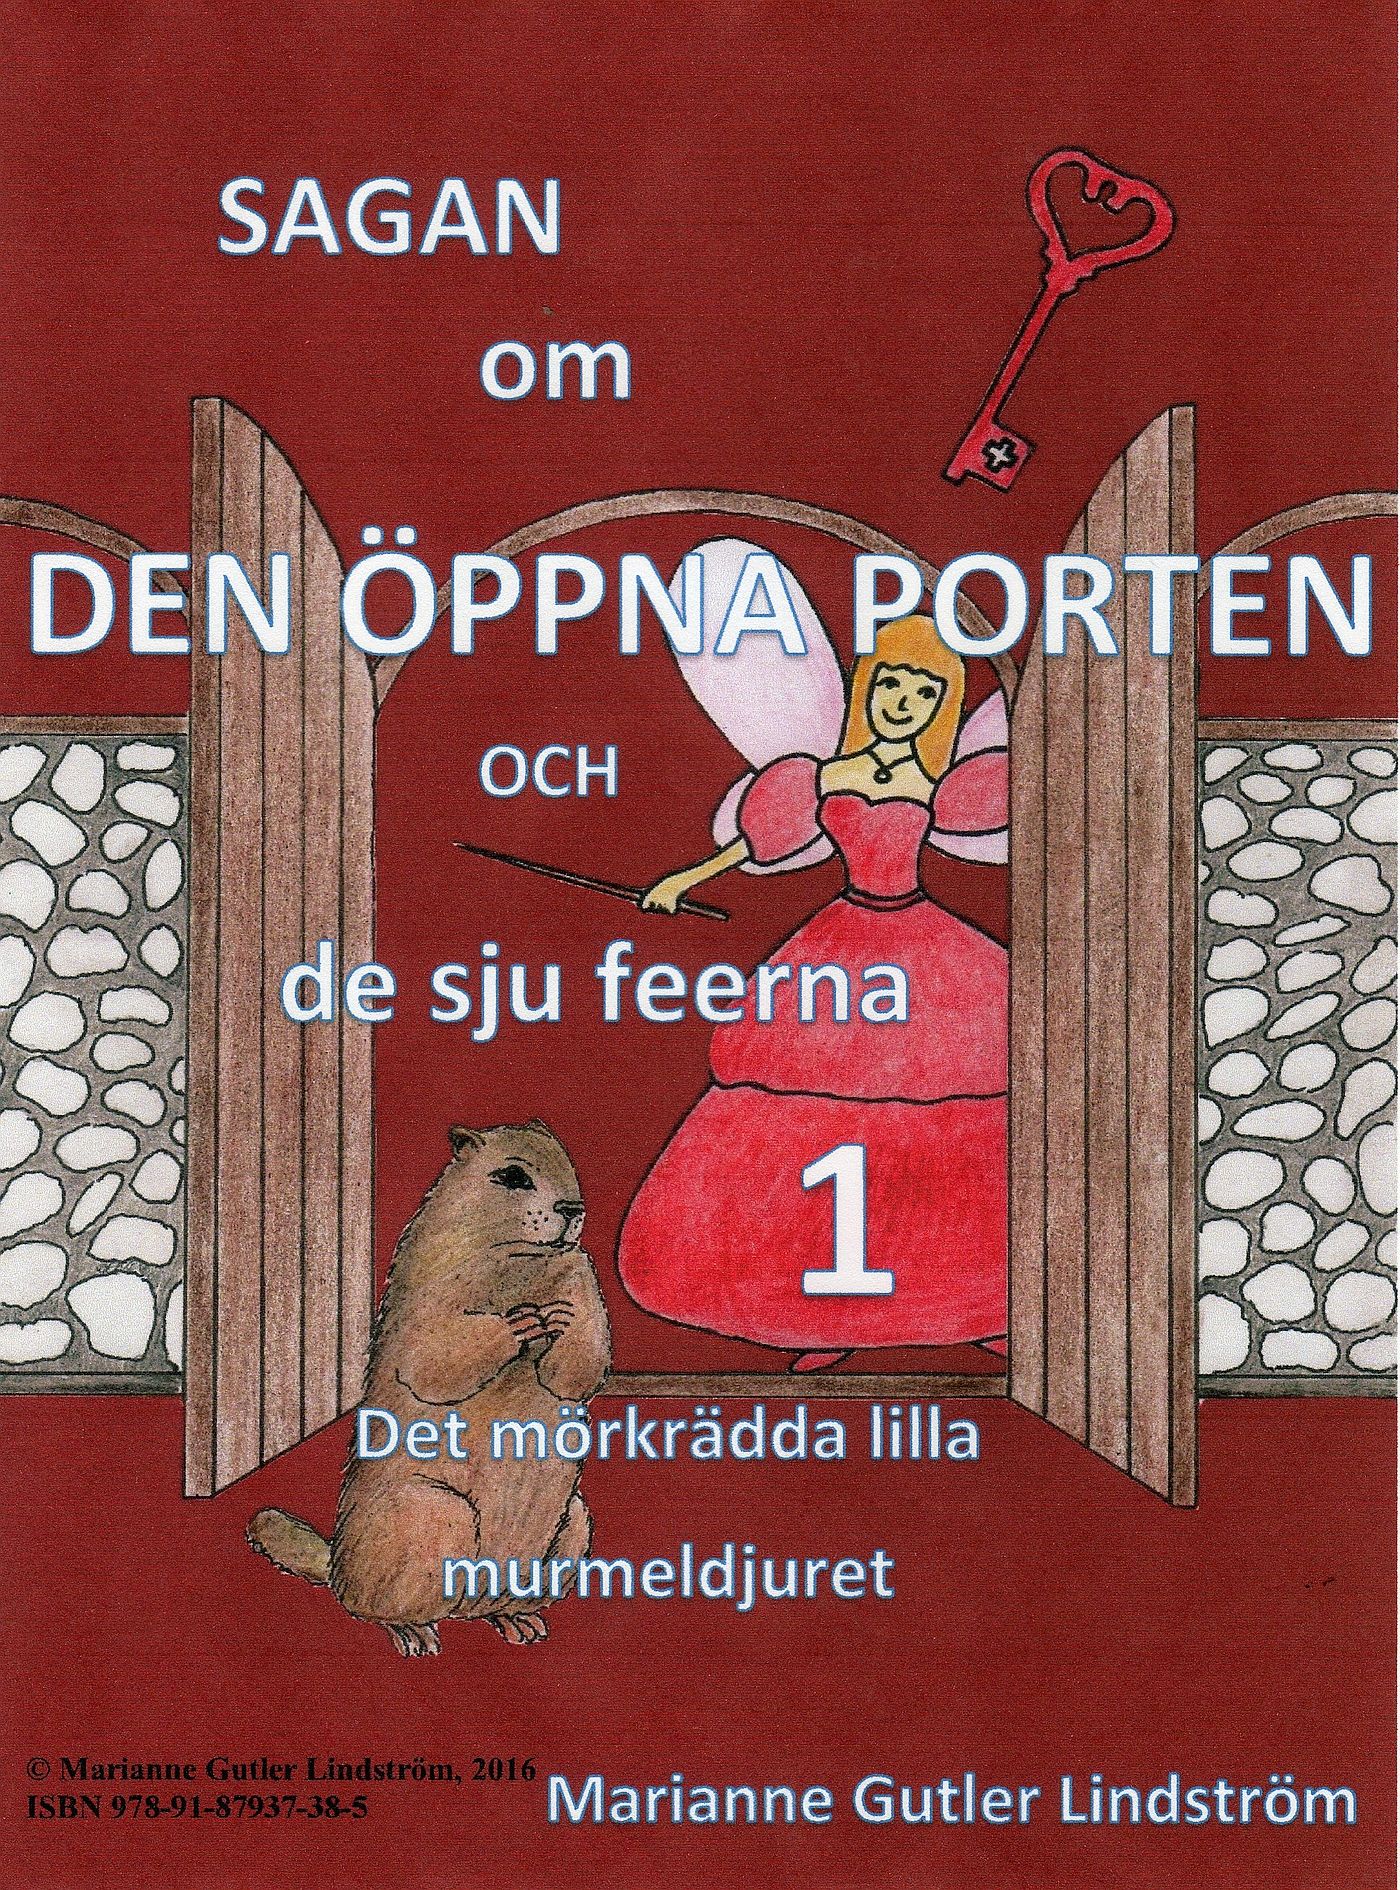 Sagan om den öppna porten 1. Det mörkrädda lilla murmeldjuret, eBook by Marianne Gutler Lindström